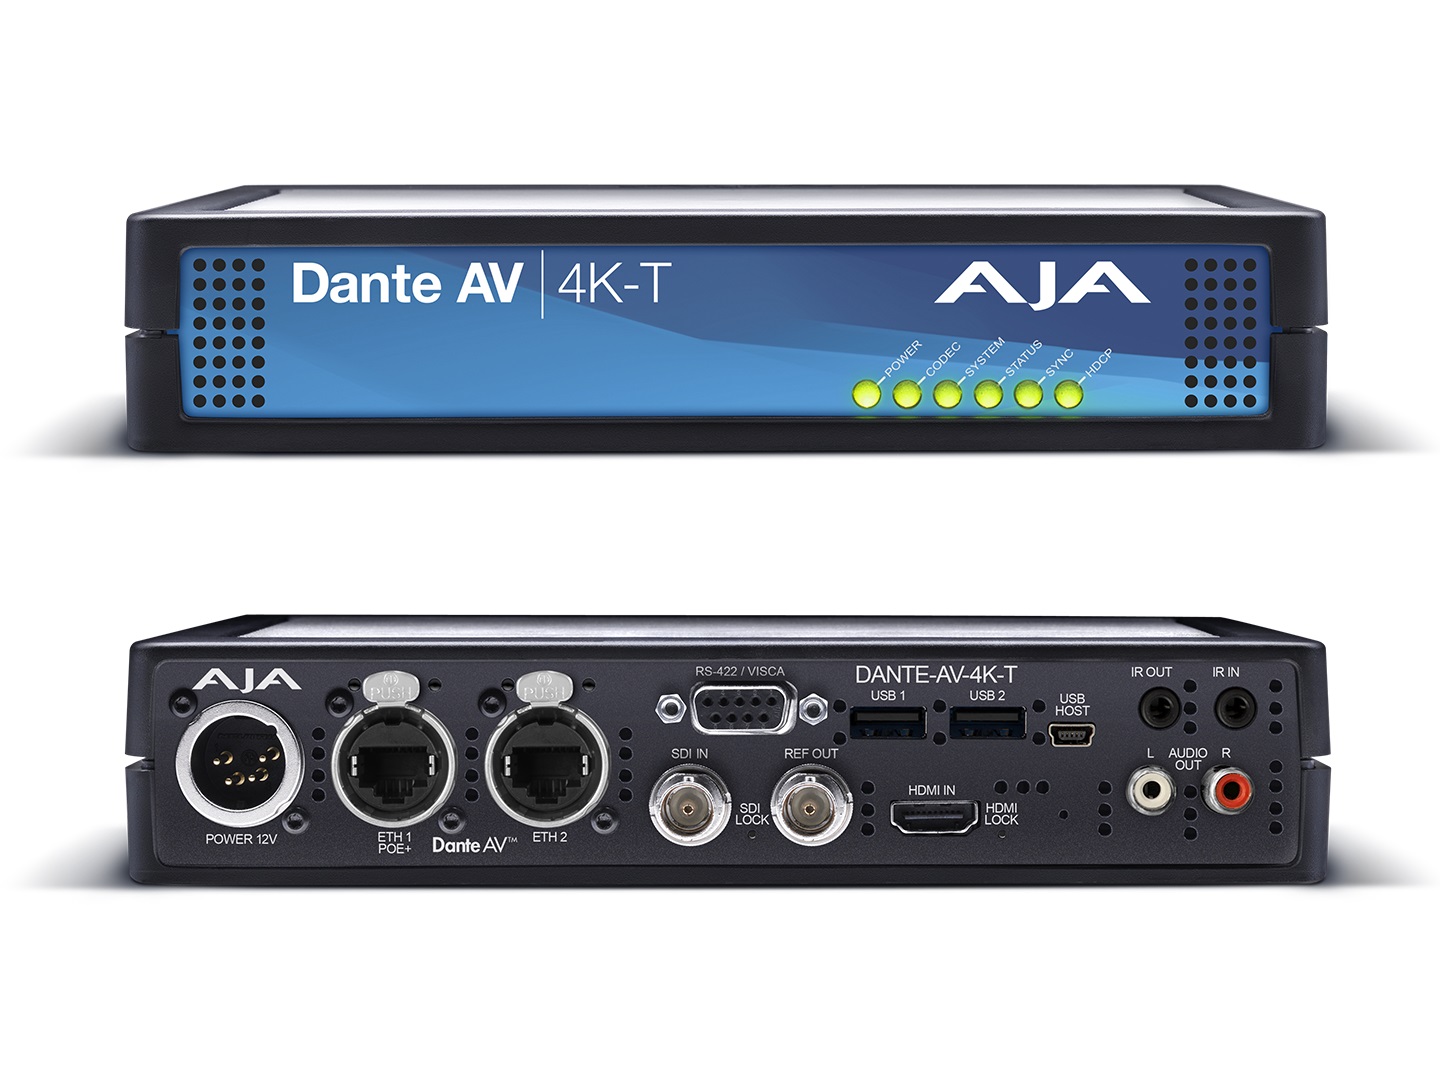 DANTE-AV-4K-T Encode 12G/HDMI Video with Embedded Audio into Dante AV Ultra JPEG 2000 (Transmitter) by AJA